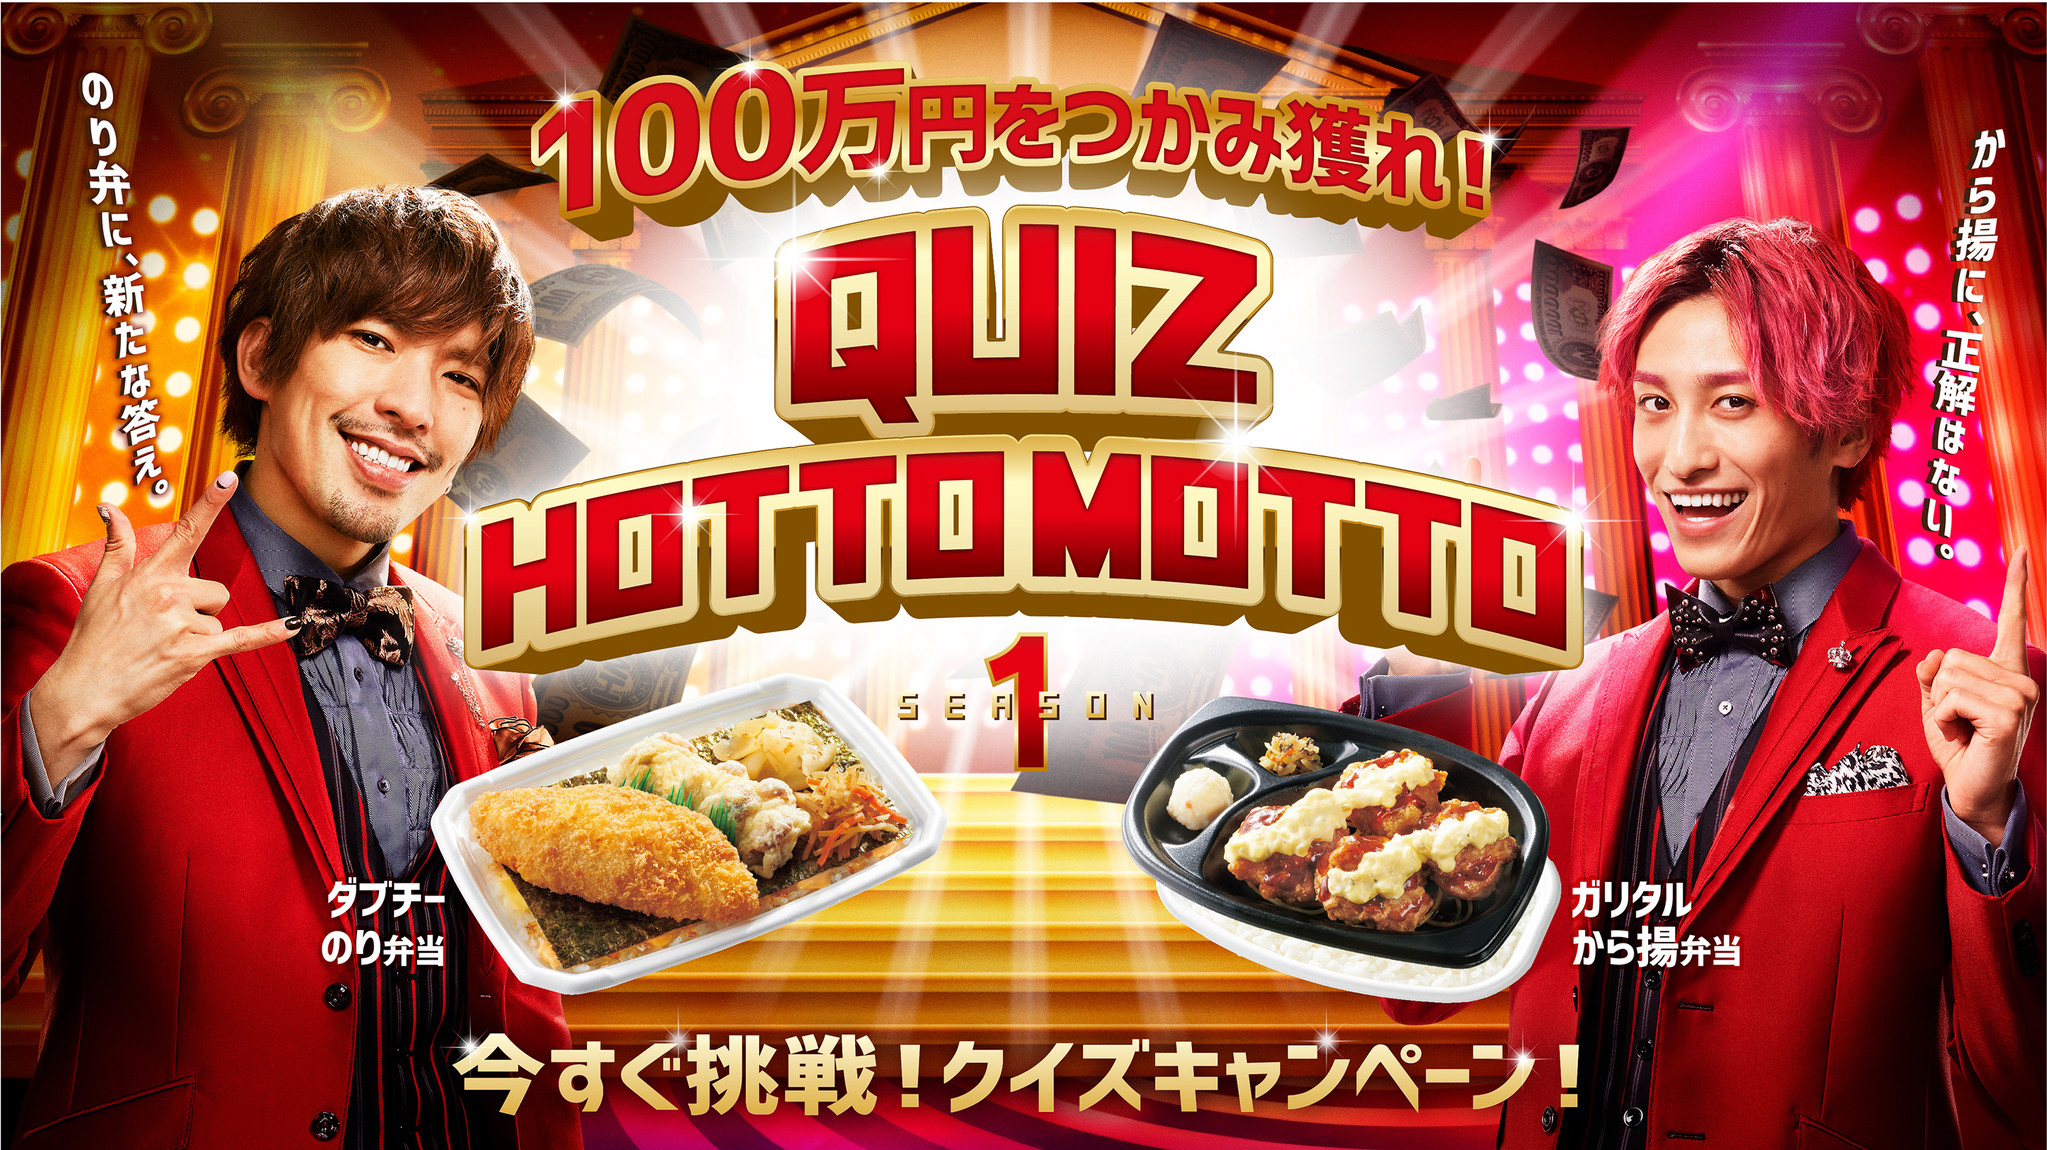 ほっともっと Exitがcmでクイズを出題 １００万円をつかみ獲れ Quiz Hotto Motto Season１ 3月18日 木 より 株式会社プレナスのプレスリリース